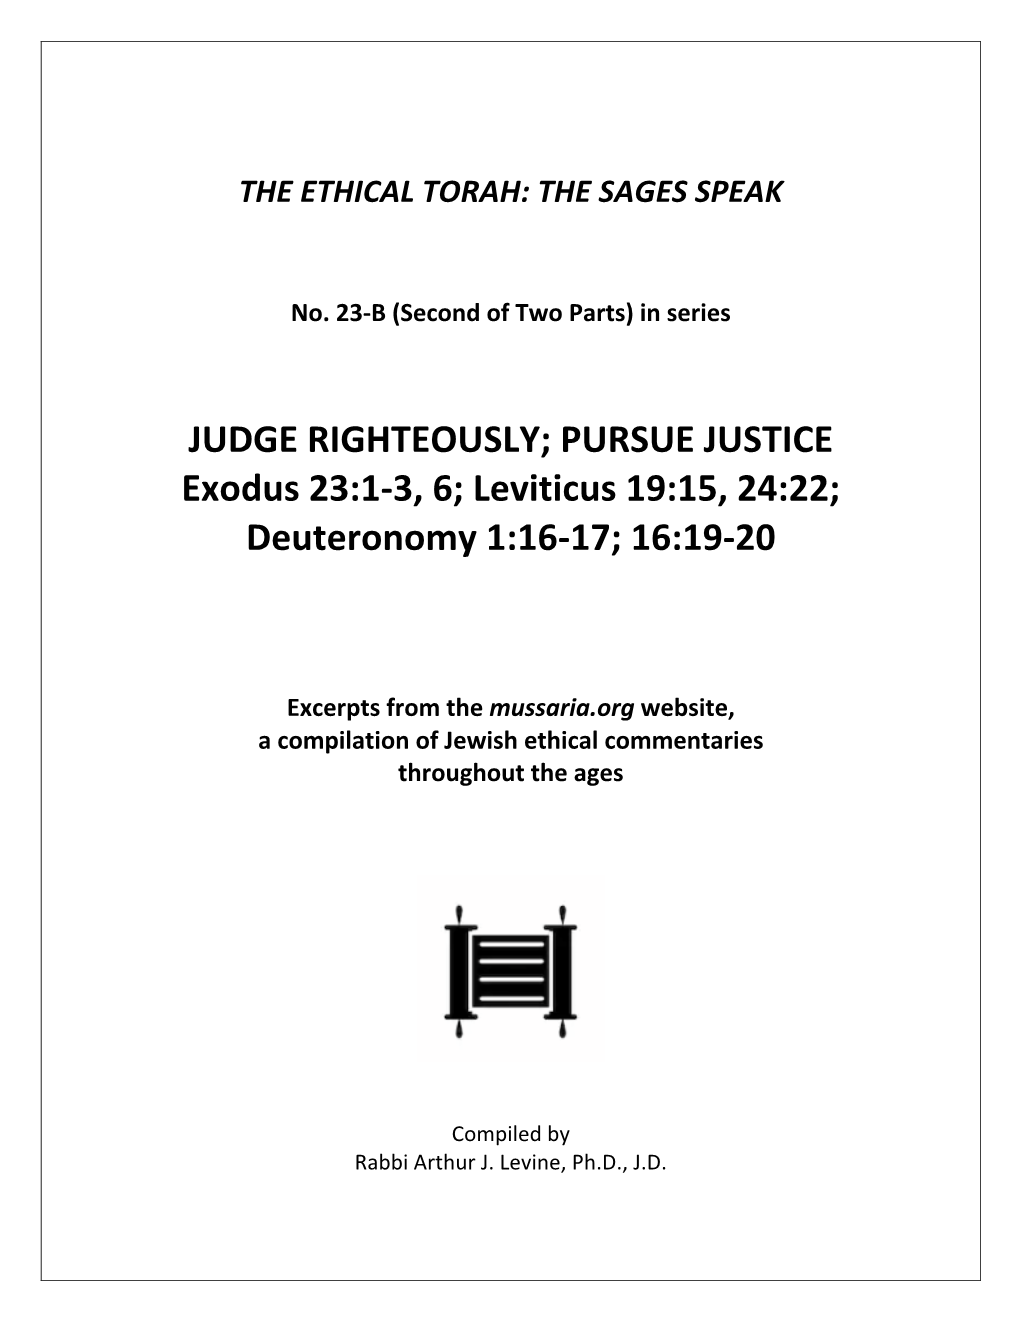 JUDGE RIGHTEOUSLY; PURSUE JUSTICE Exodus 23:1-3, 6; Leviticus 19:15, 24:22; Deuteronomy 1:16-17; 16:19-20